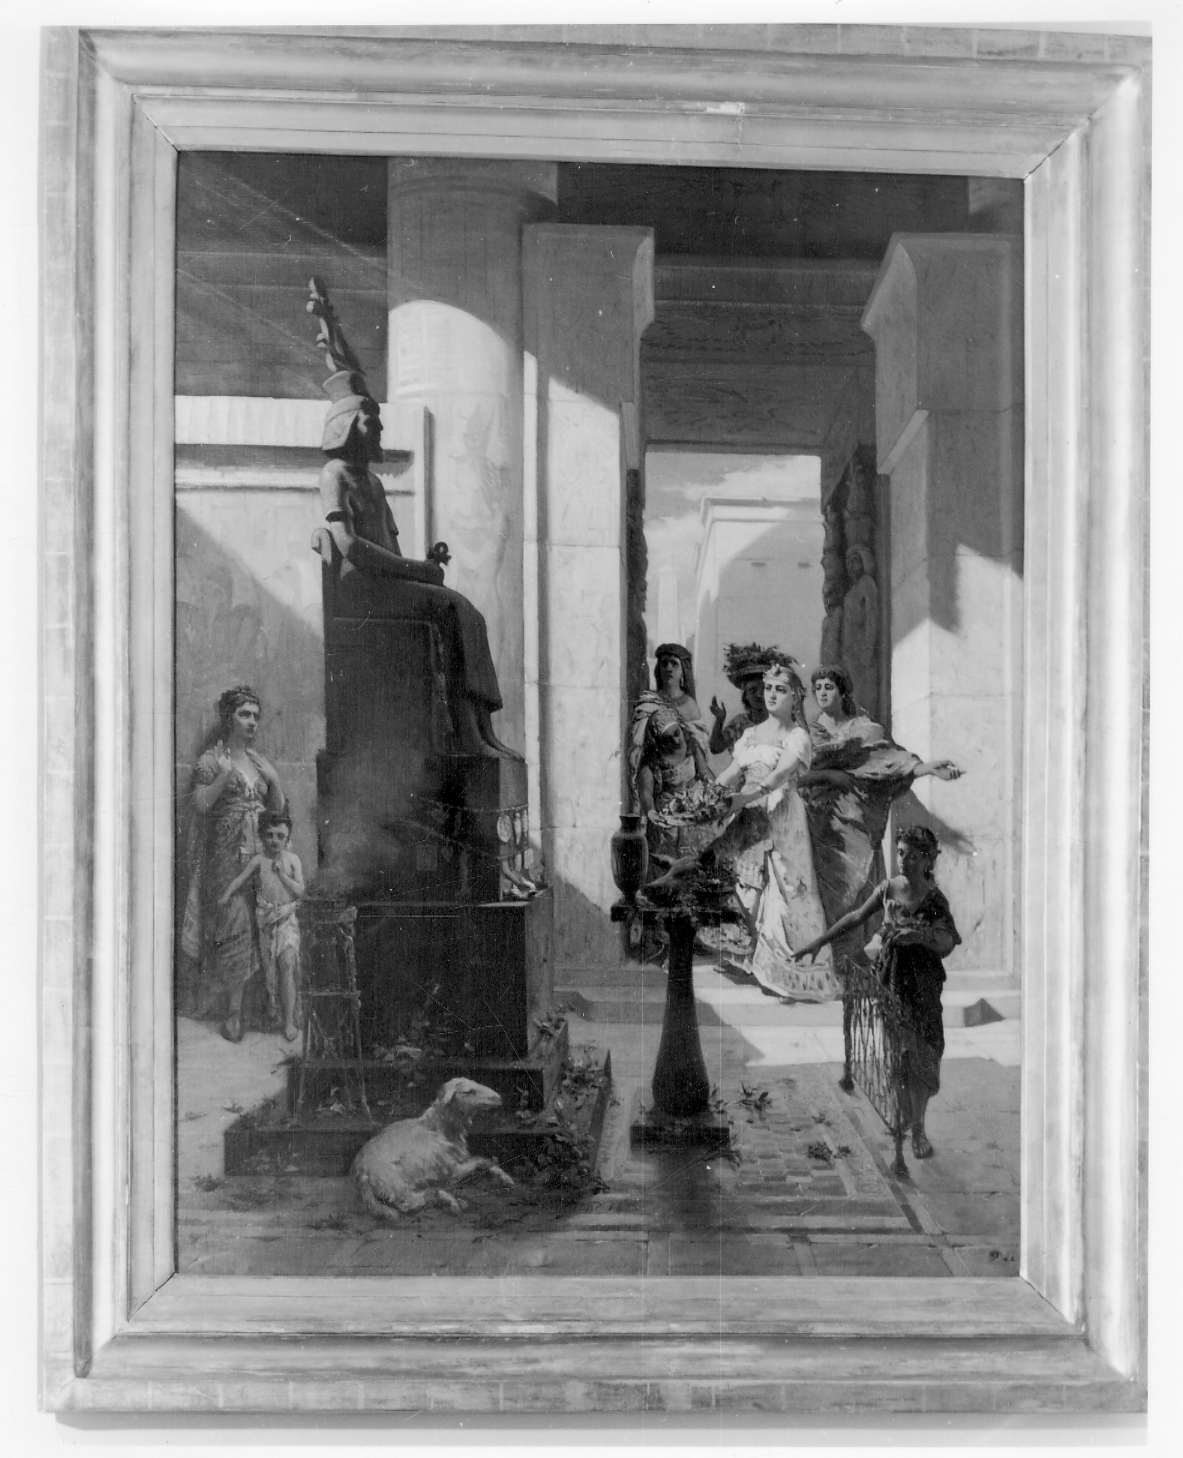 Offerte al nume, sacrificio in un tempio egizio (dipinto, opera isolata) di Raimond Ludovico (ultimo quarto sec. XIX)